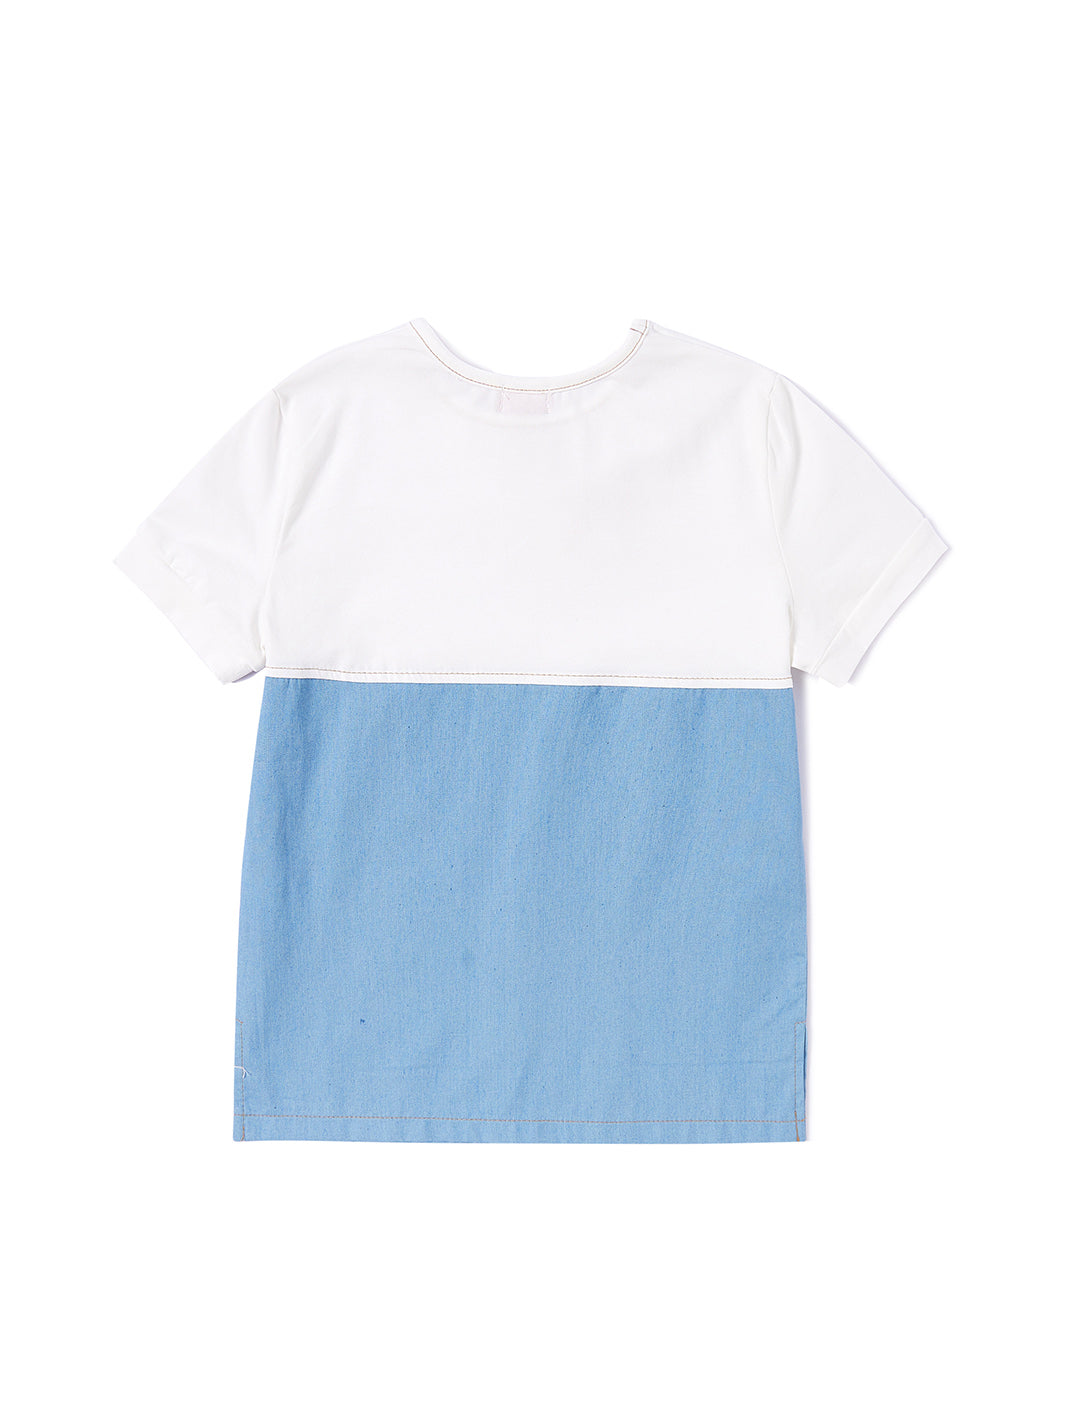 Combo Bottom Short Sleeve T-shirt - White Combo Lt. Blue